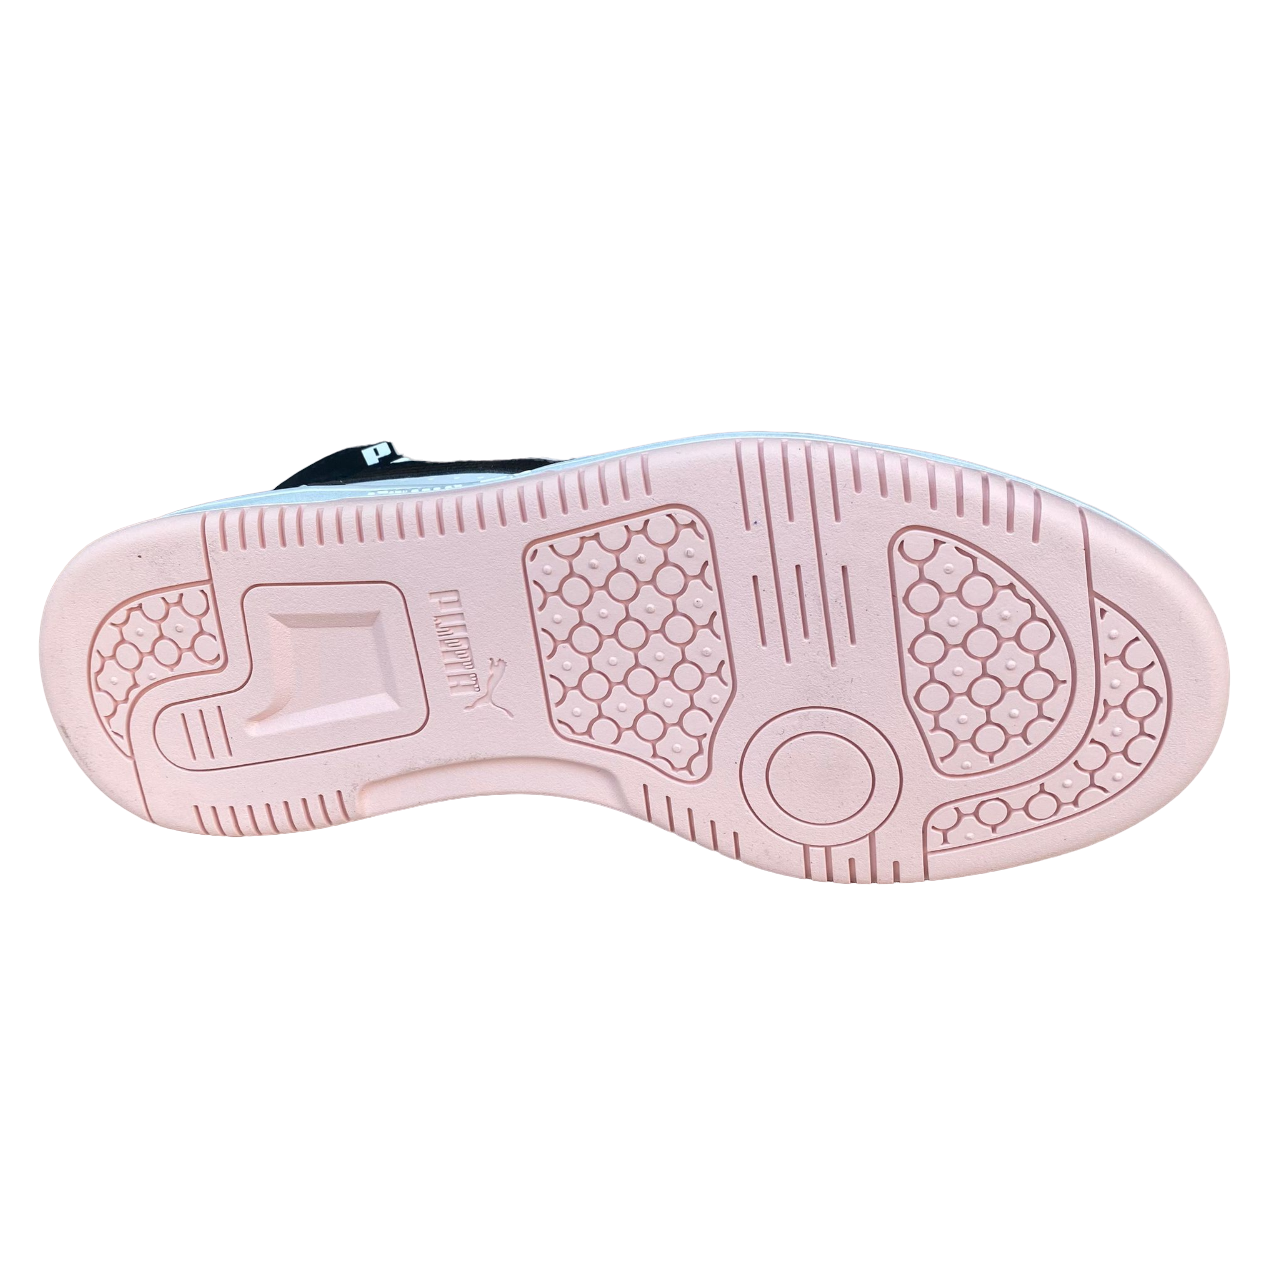 Puma Scarpa sneakers da donna Rebound v6 392326-14 bianco-nero-rosa chiaro